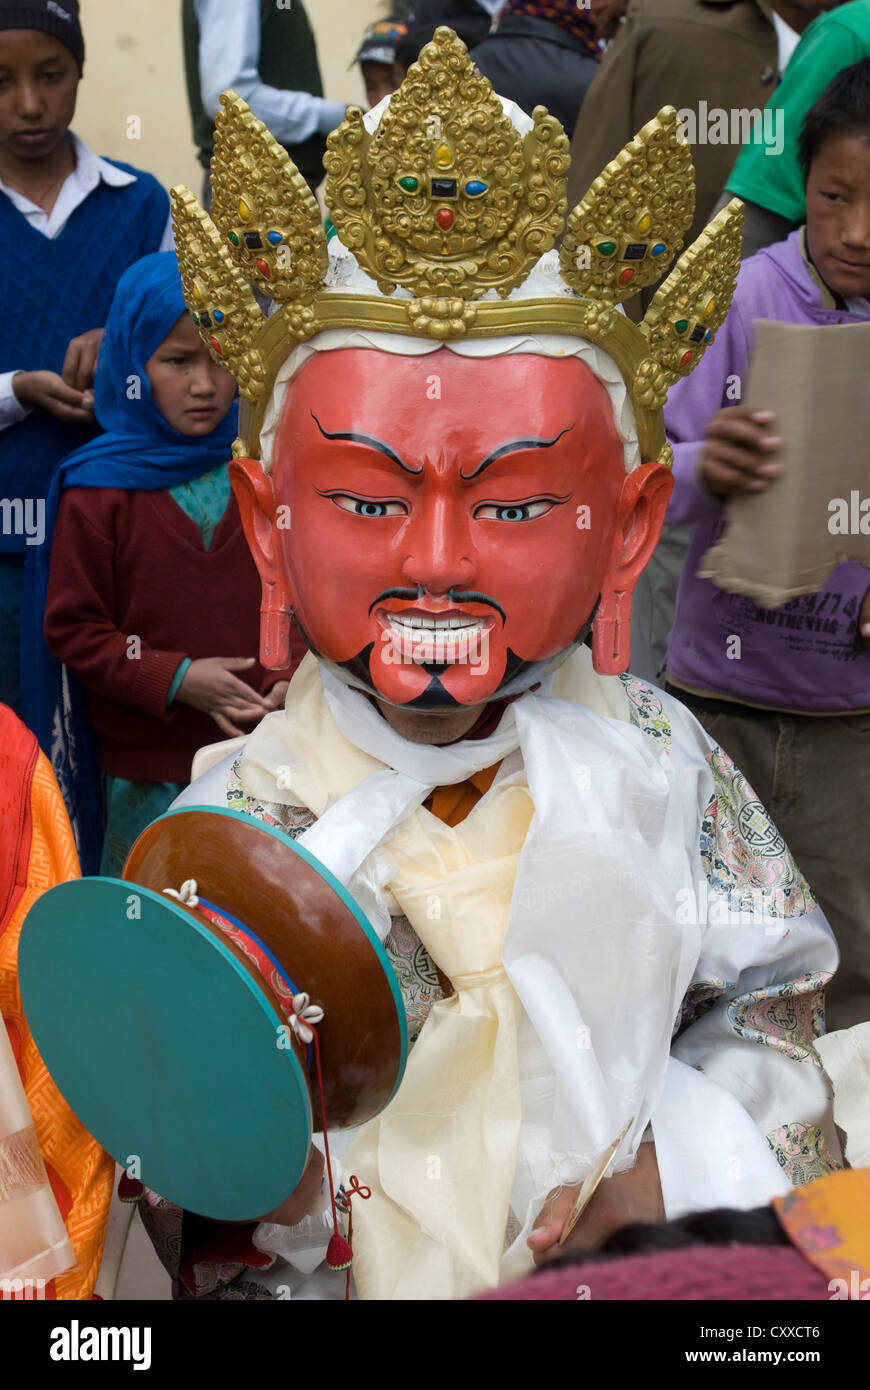 Una mascherata monaco buddista esegue un rituale in occasione dell'annuale Festival Kungri nel Pin valley, Spiti, India settentrionale Foto Stock